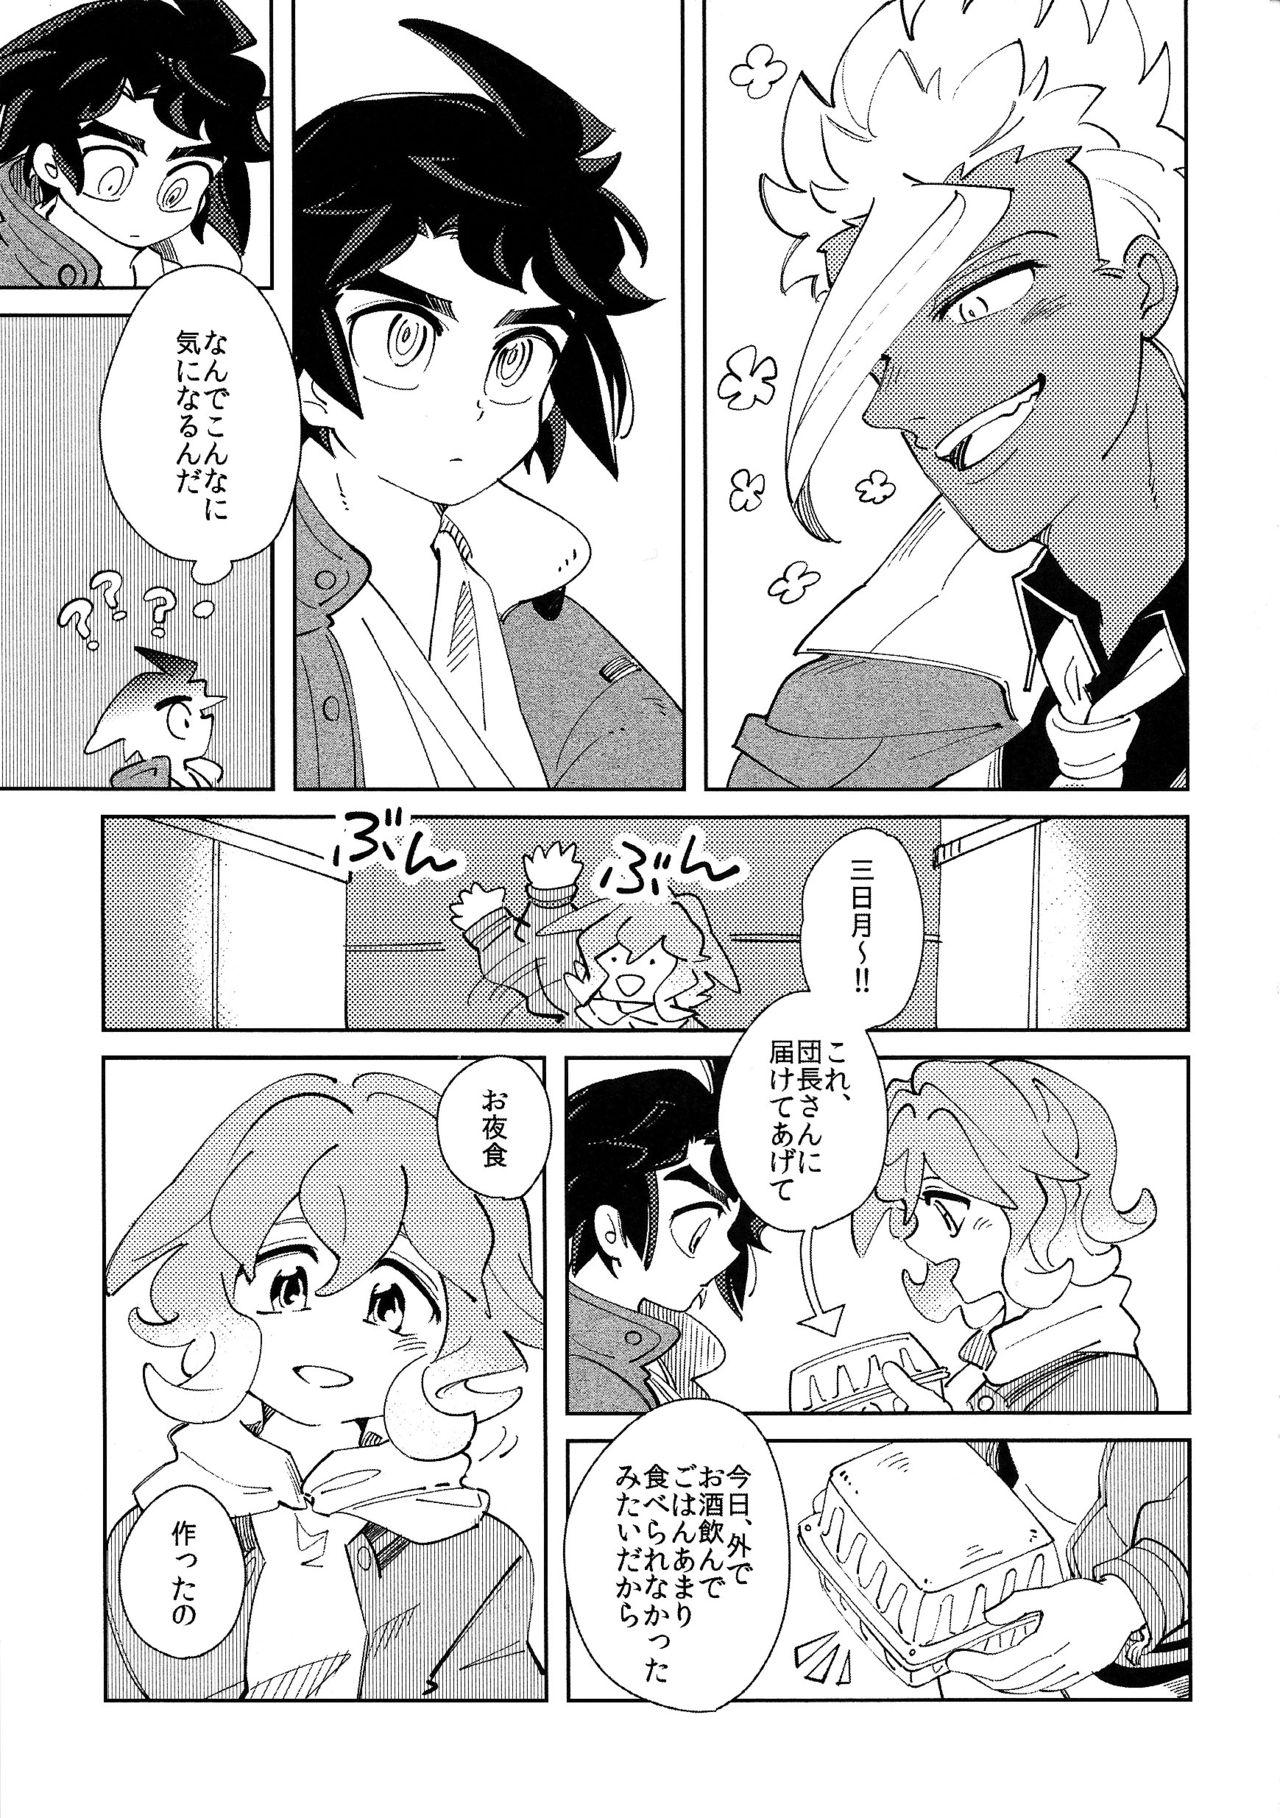 Fun Moufu no Nakami wa? - Mobile suit gundam tekketsu no orphans Bound - Page 6